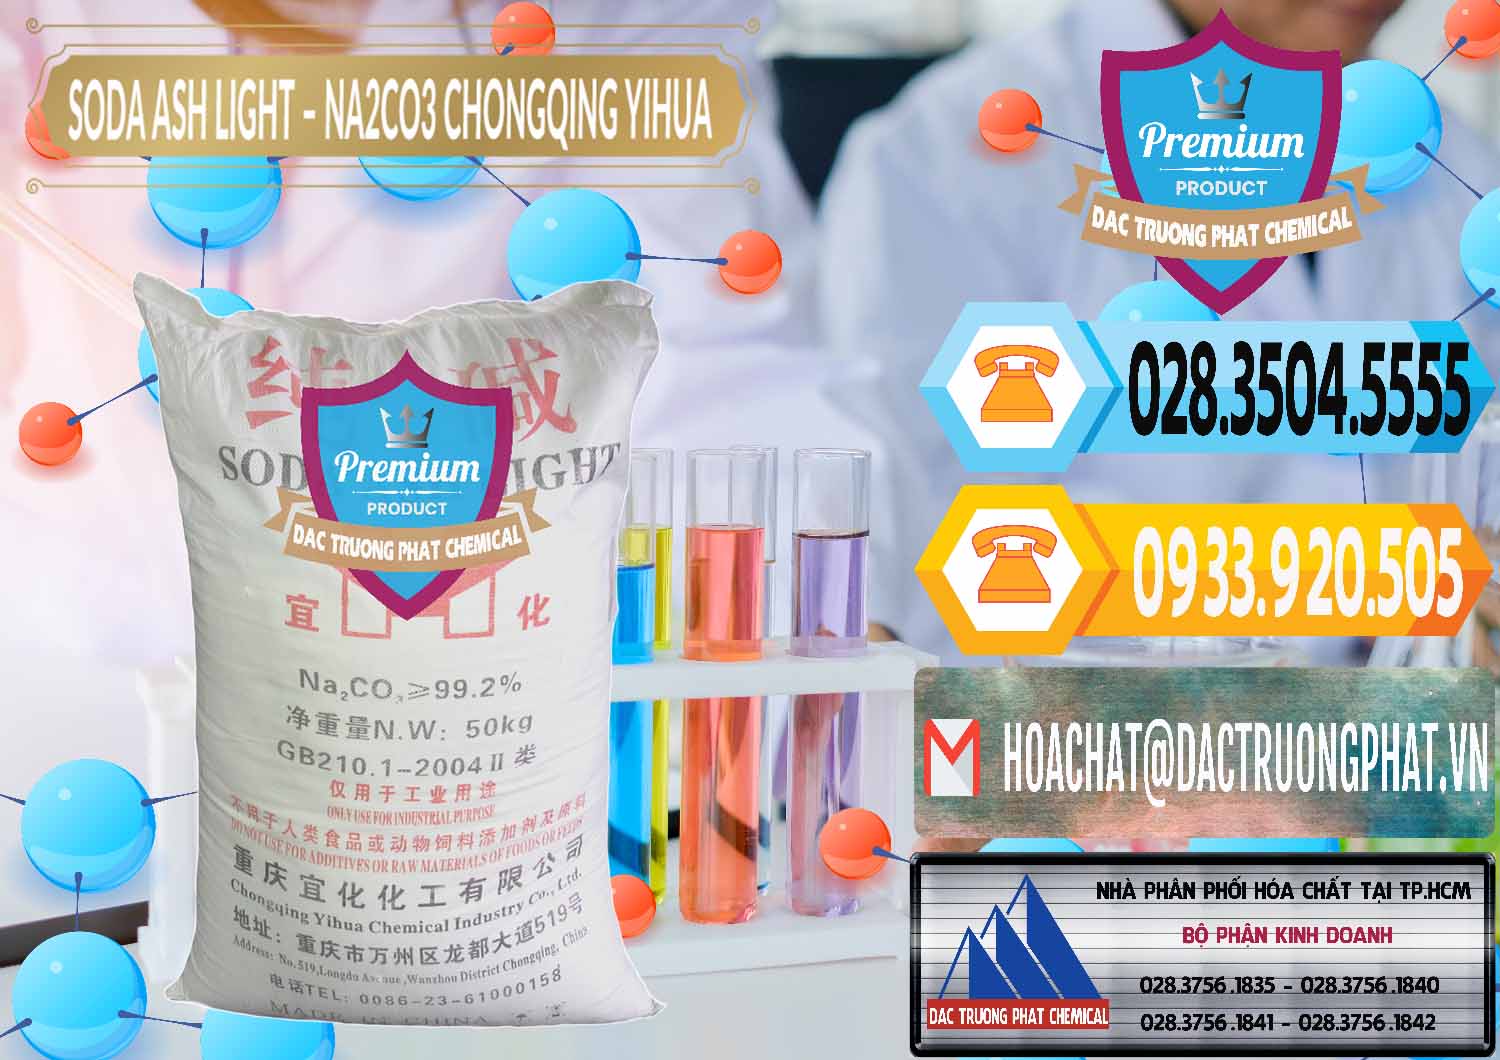 Công ty chuyên bán và cung cấp Soda Ash Light - NA2CO3 Chongqing Yihua Trung Quốc China - 0129 - Công ty nhập khẩu & cung cấp hóa chất tại TP.HCM - hoachattayrua.net